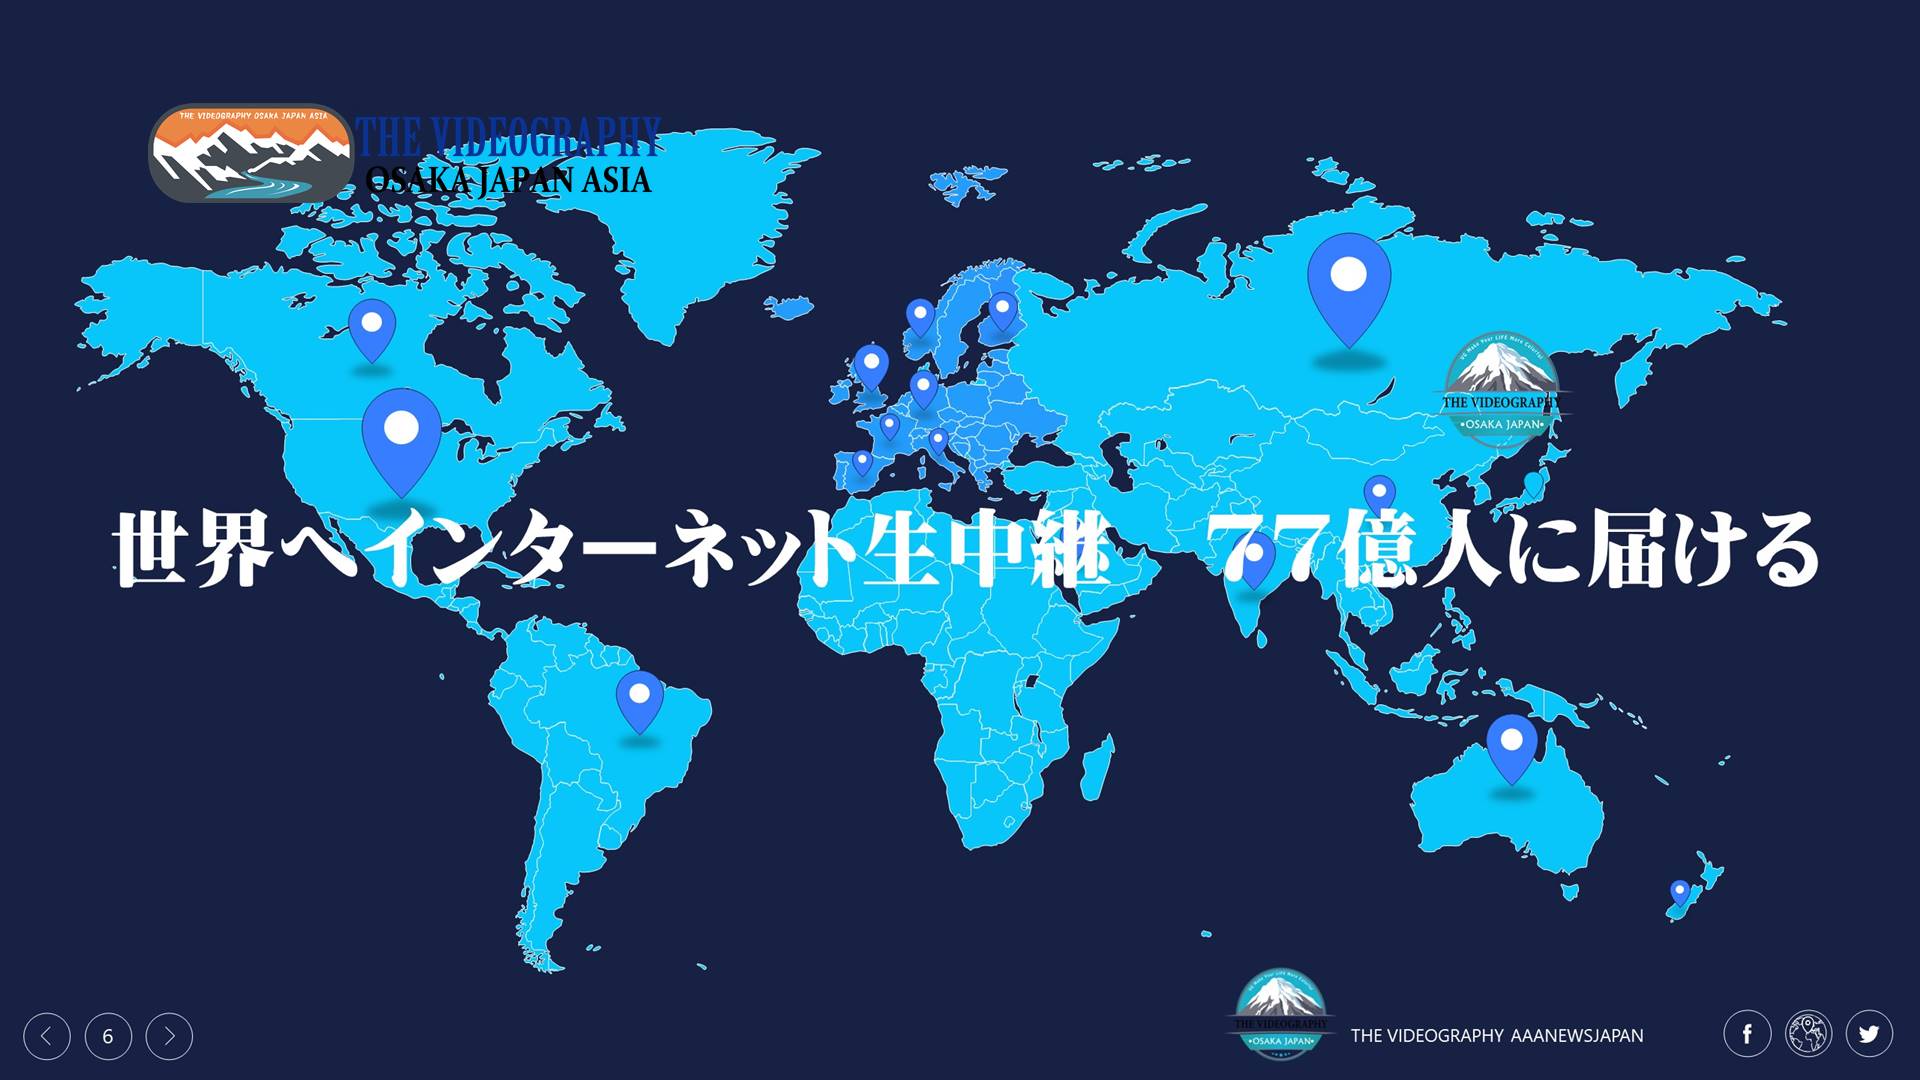 世界の77億人へインターーネット生中継。視聴者は日本だけでなく、世界の77億人に届けましょう。有料制 会員制 メンバー限定 サブスクリプションサービスとしてのライブ配信 動画配信プラットフォーム構築 ホームページ作成はビデオグラフィにおまかせを